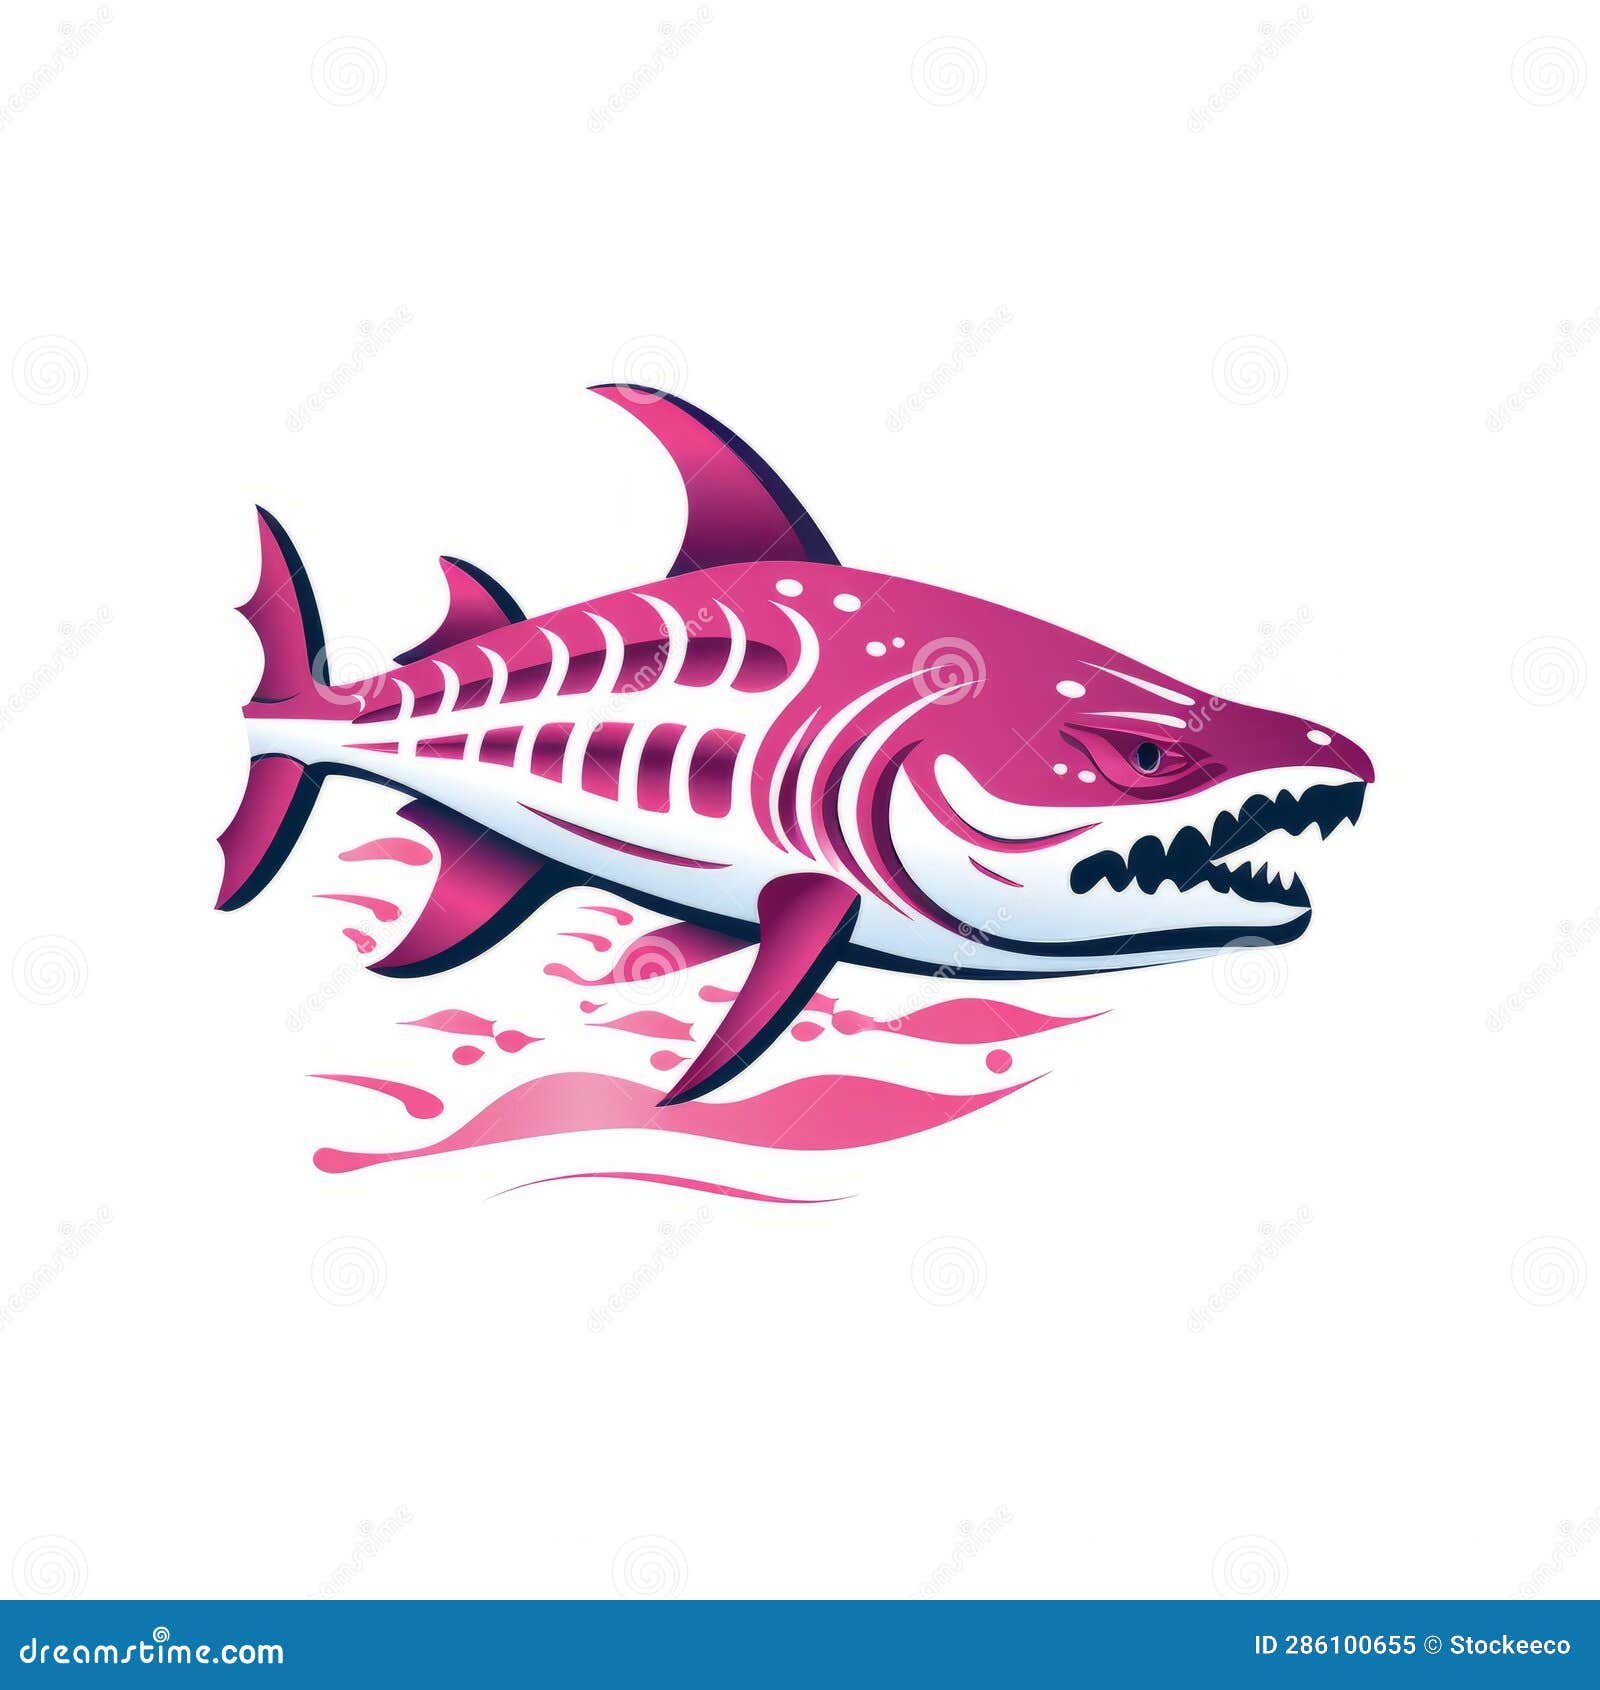 radiology unit logo: idiopathic thrombocytopenic purpura with zebra shark